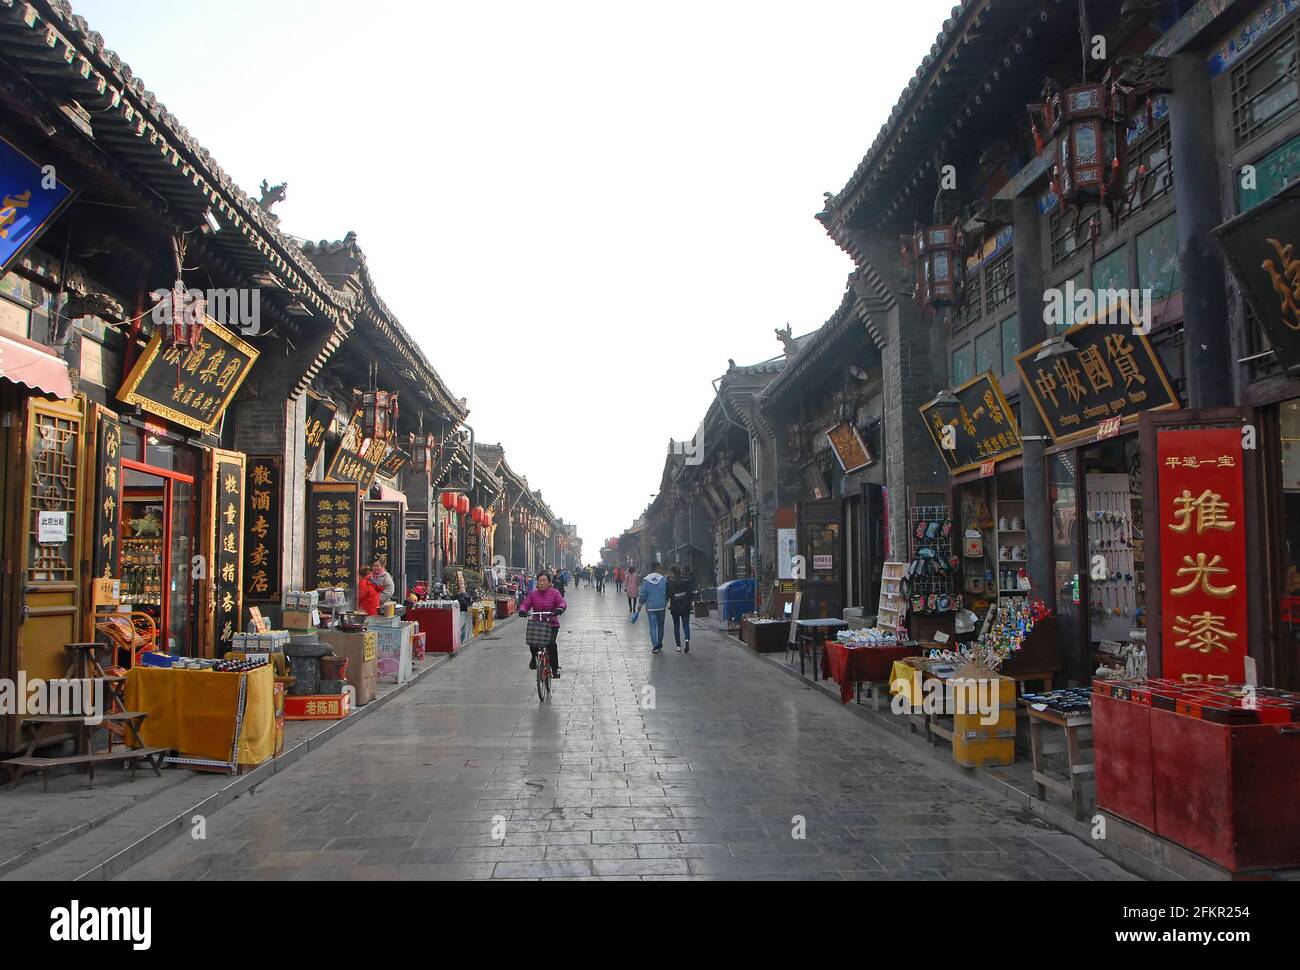 Une rue principale à Pingyao, province du Shanxi, Chine bordée de petits magasins. Une femme fait du vélo et les gens marchent. Banque D'Images